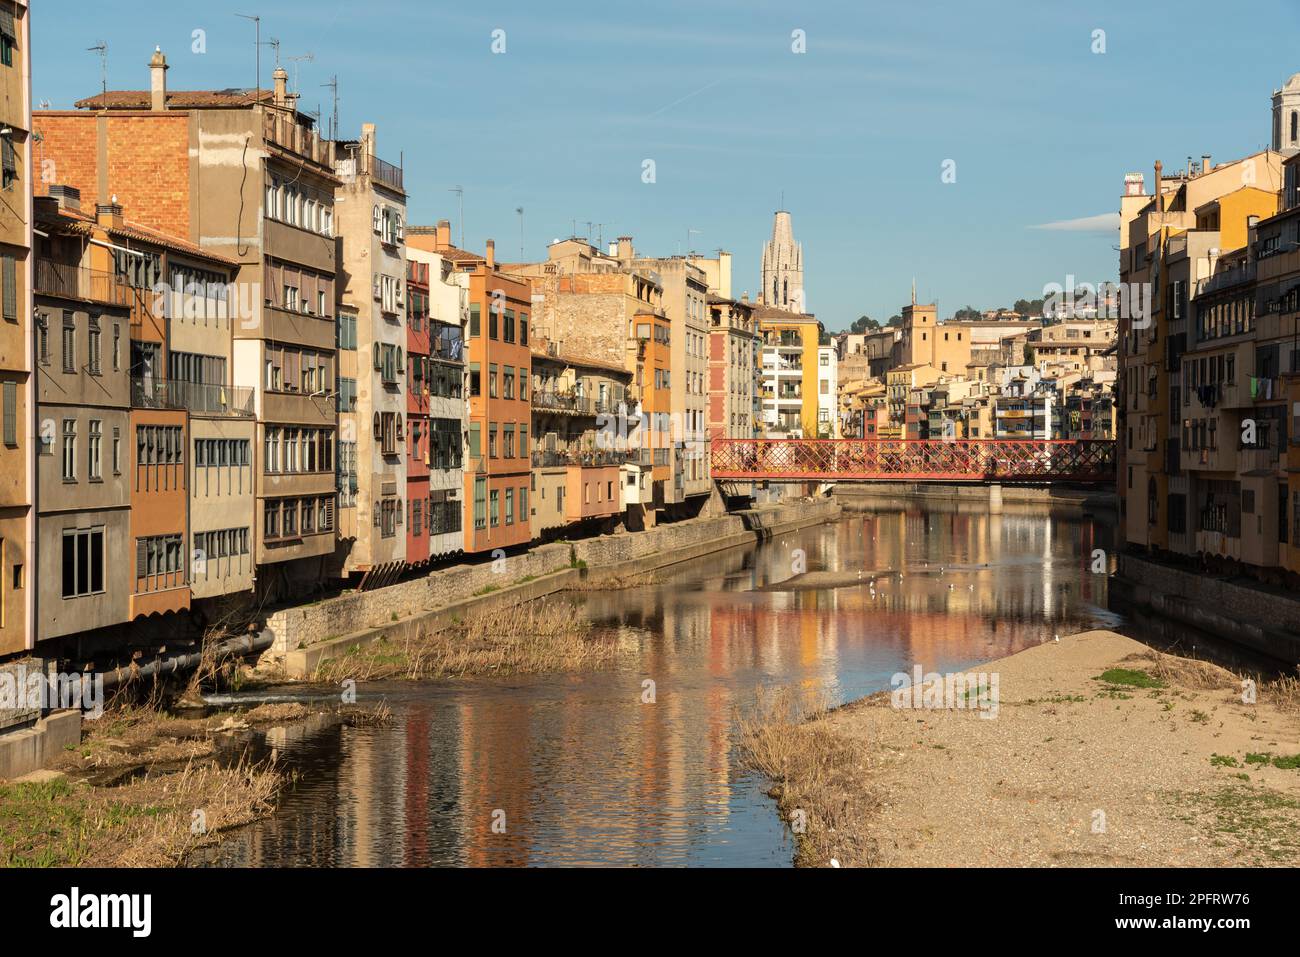 Die farbenfrohen Gebäude von Girona in Catalunya, Spanien, verleihen dem historischen Charme der Stadt ein lebendiges und verspieltes Element Stockfoto